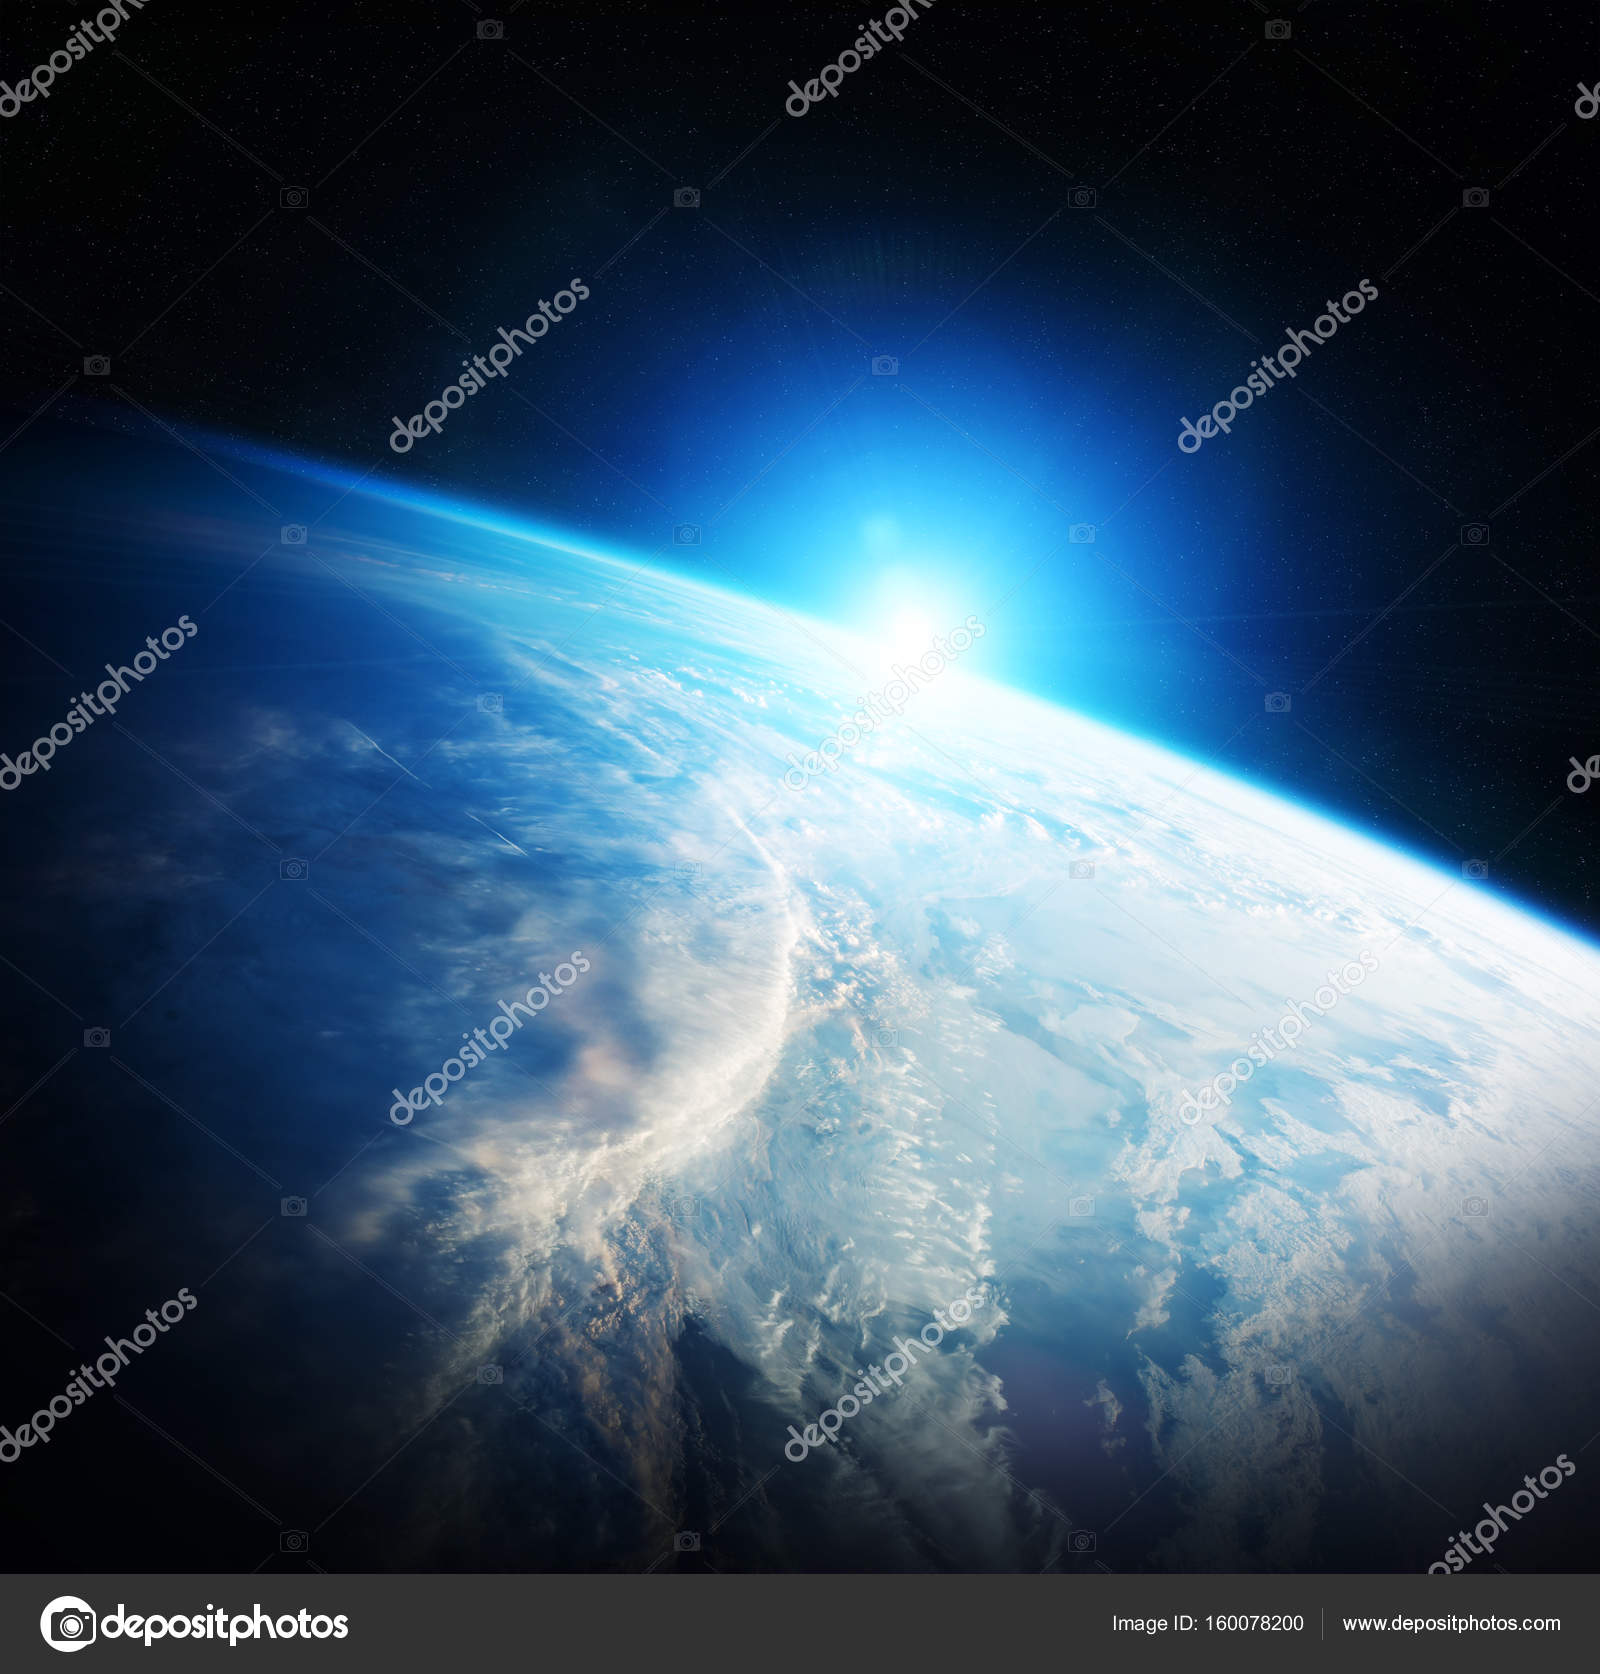 このイメージの内装の惑星の地球ビュー 3 D レンダリング要素 ストック写真 C Sdecoret